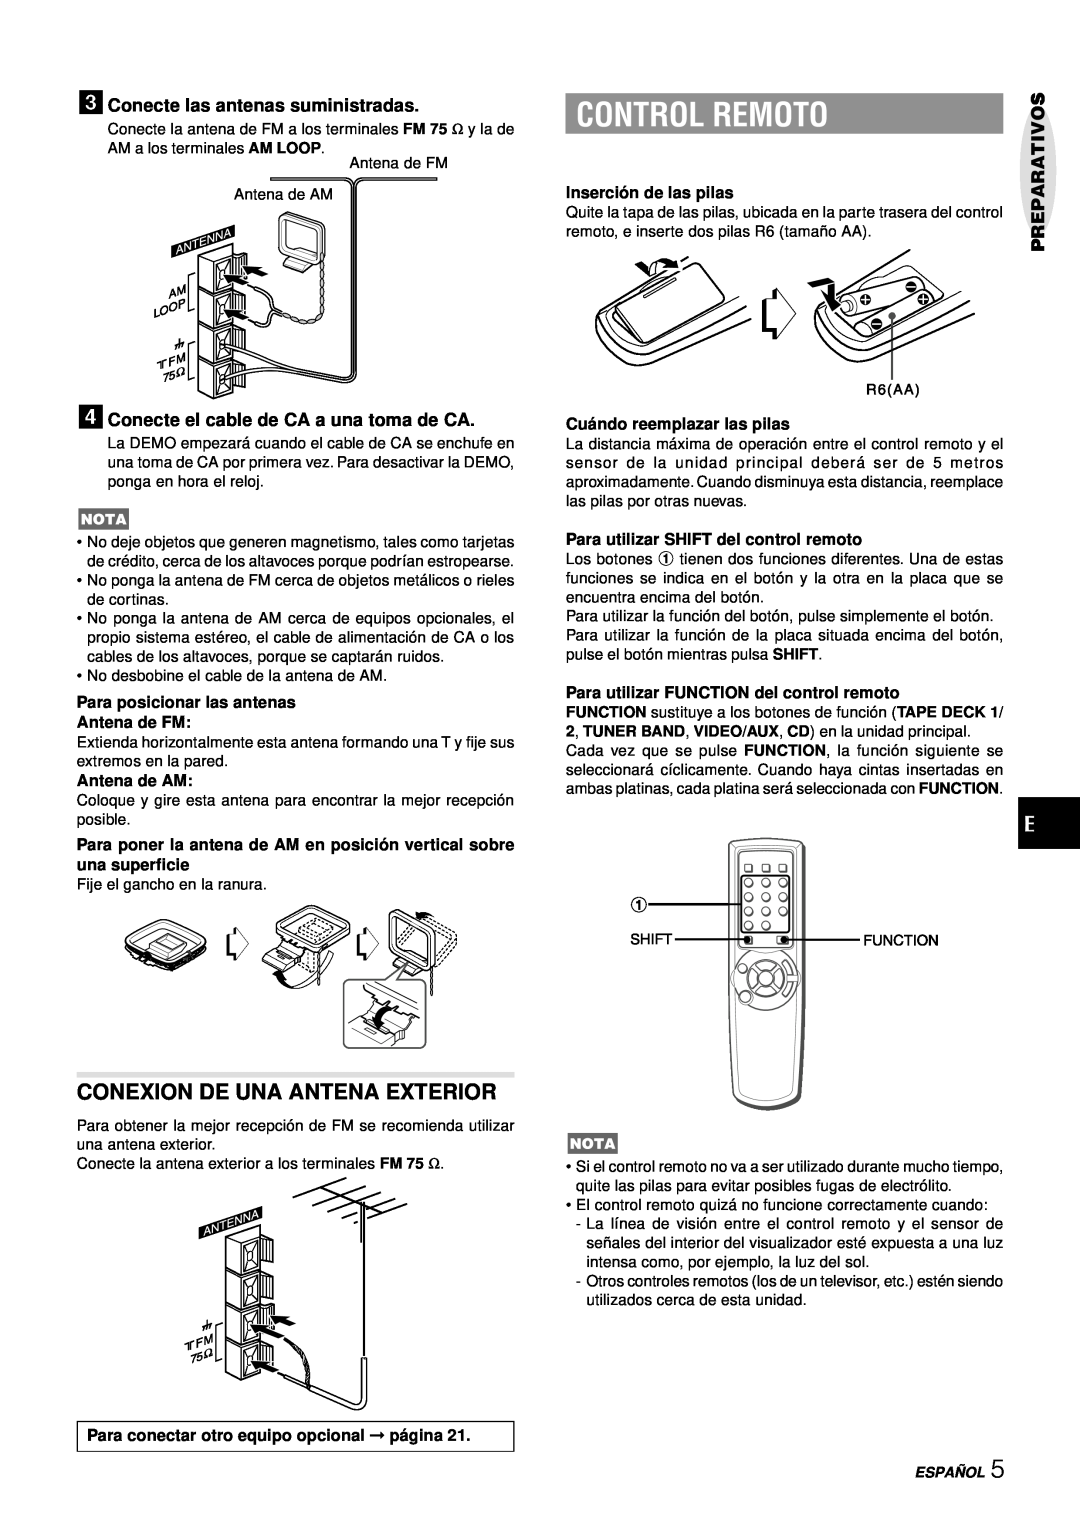 Aiwa NSX-AJ50 Control Remoto, Conexion De Una Antena Exterior, 3Conecte las antenas suministradas, Preparativos, Españ Ol 